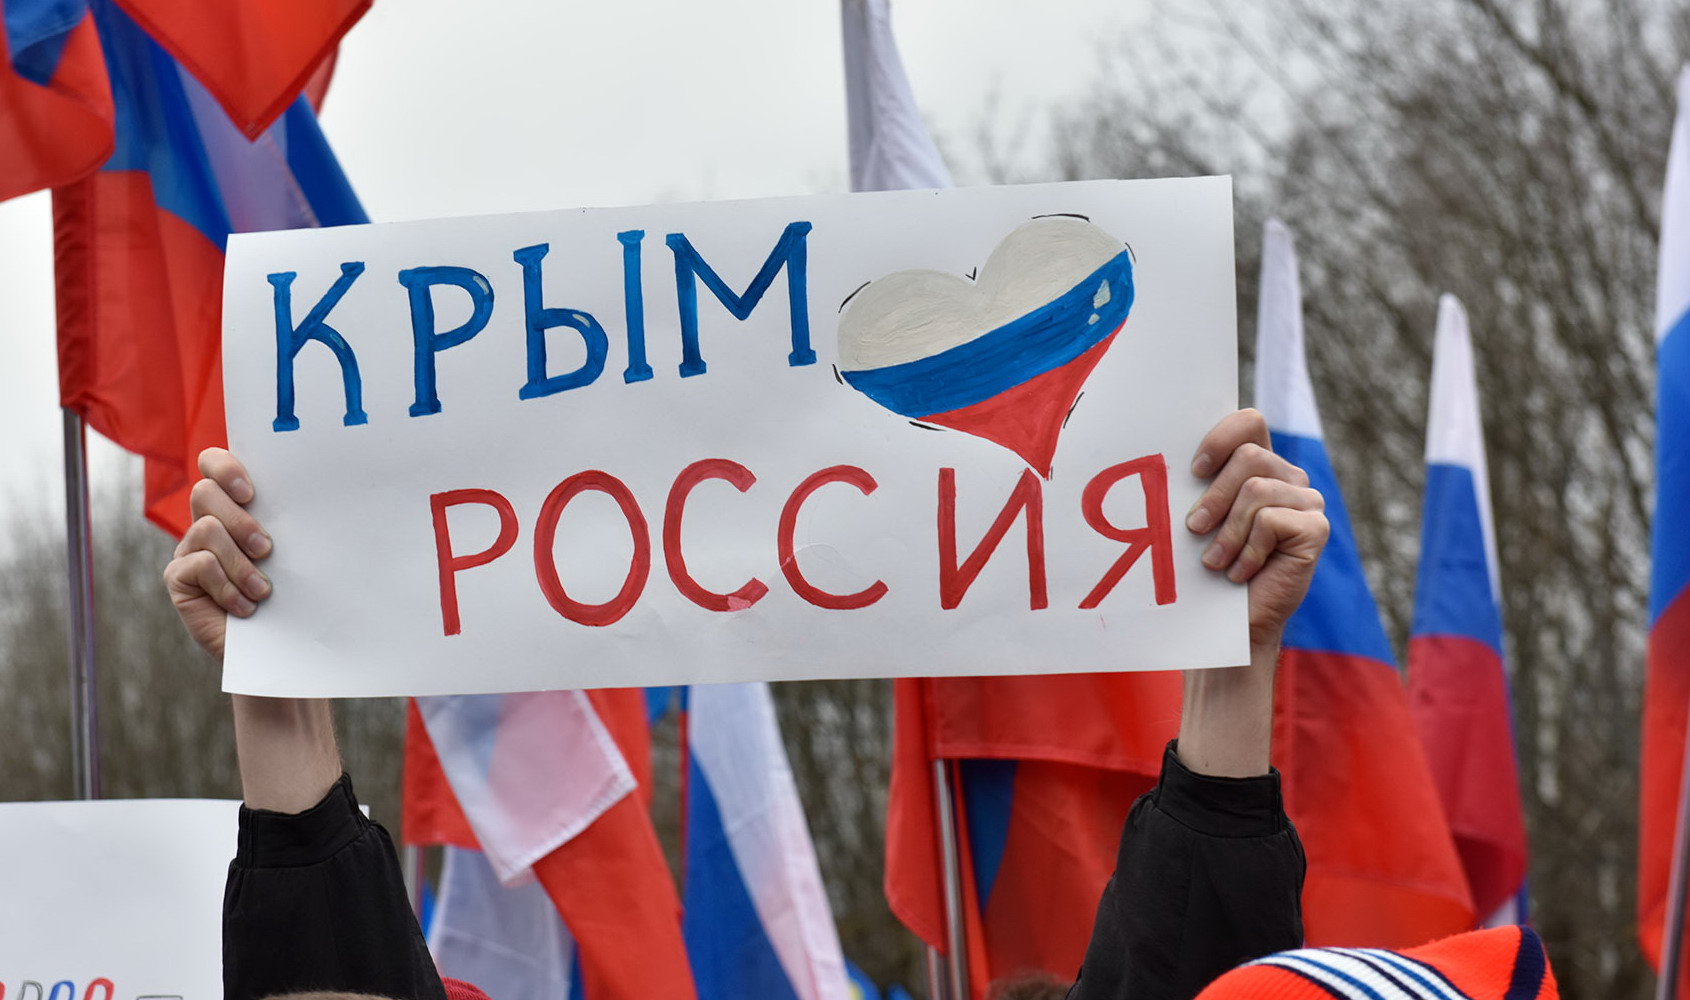 Присоединение Крыма к России